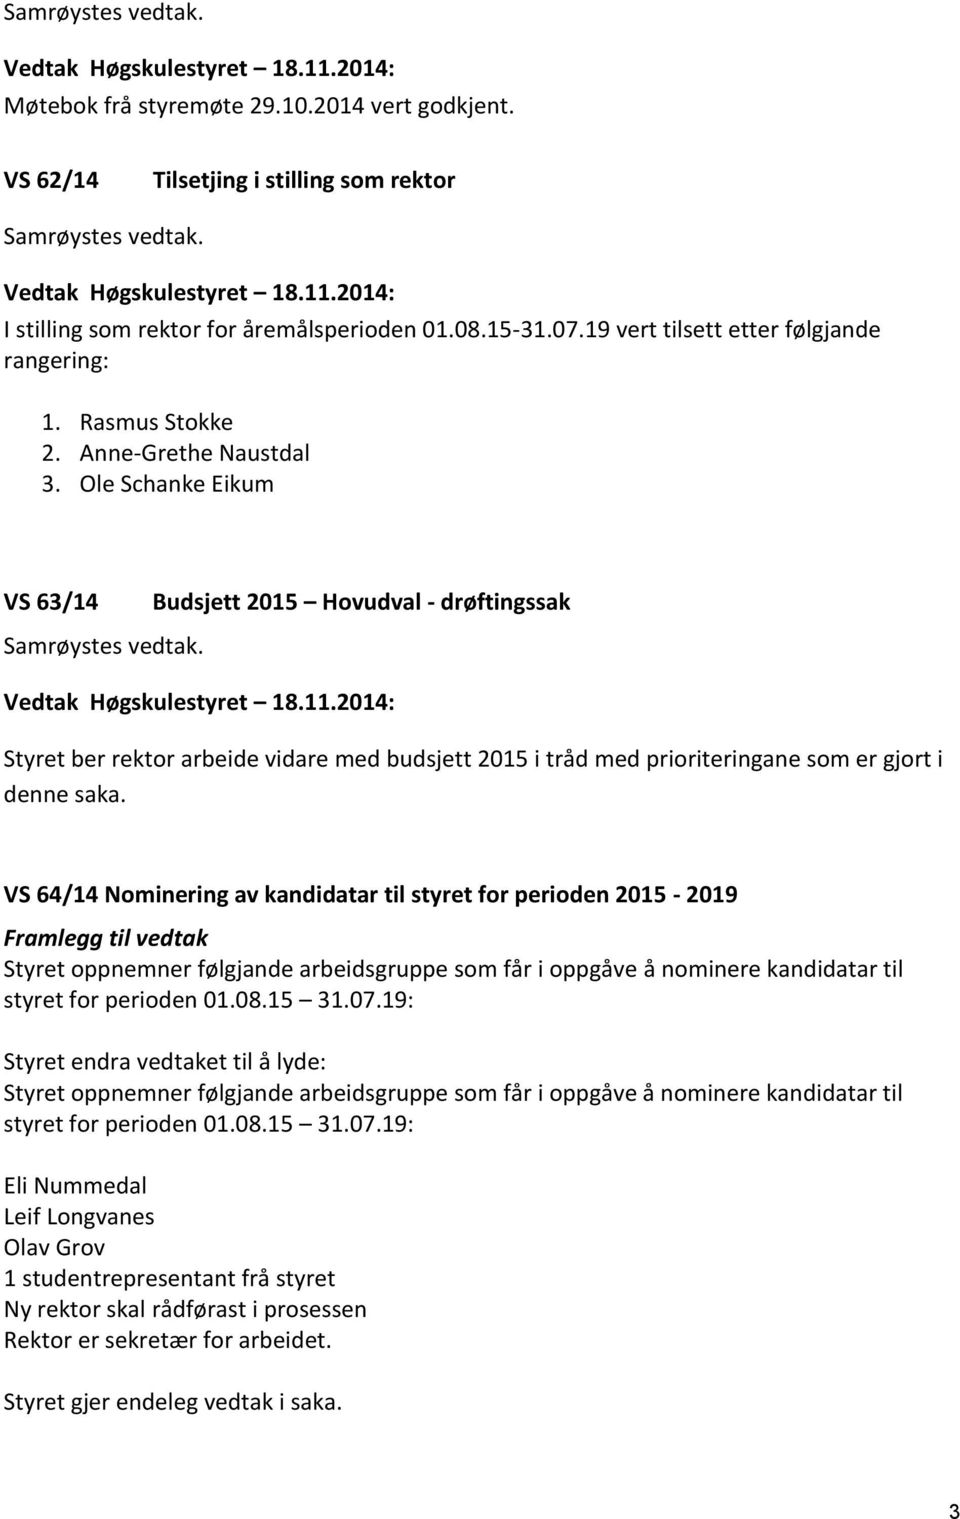 Vedtak Høgskulestyret 18.11.2014: Styret ber rektor arbeide vidare med budsjett 2015 i tråd med prioriteringane som er gjort i denne saka.